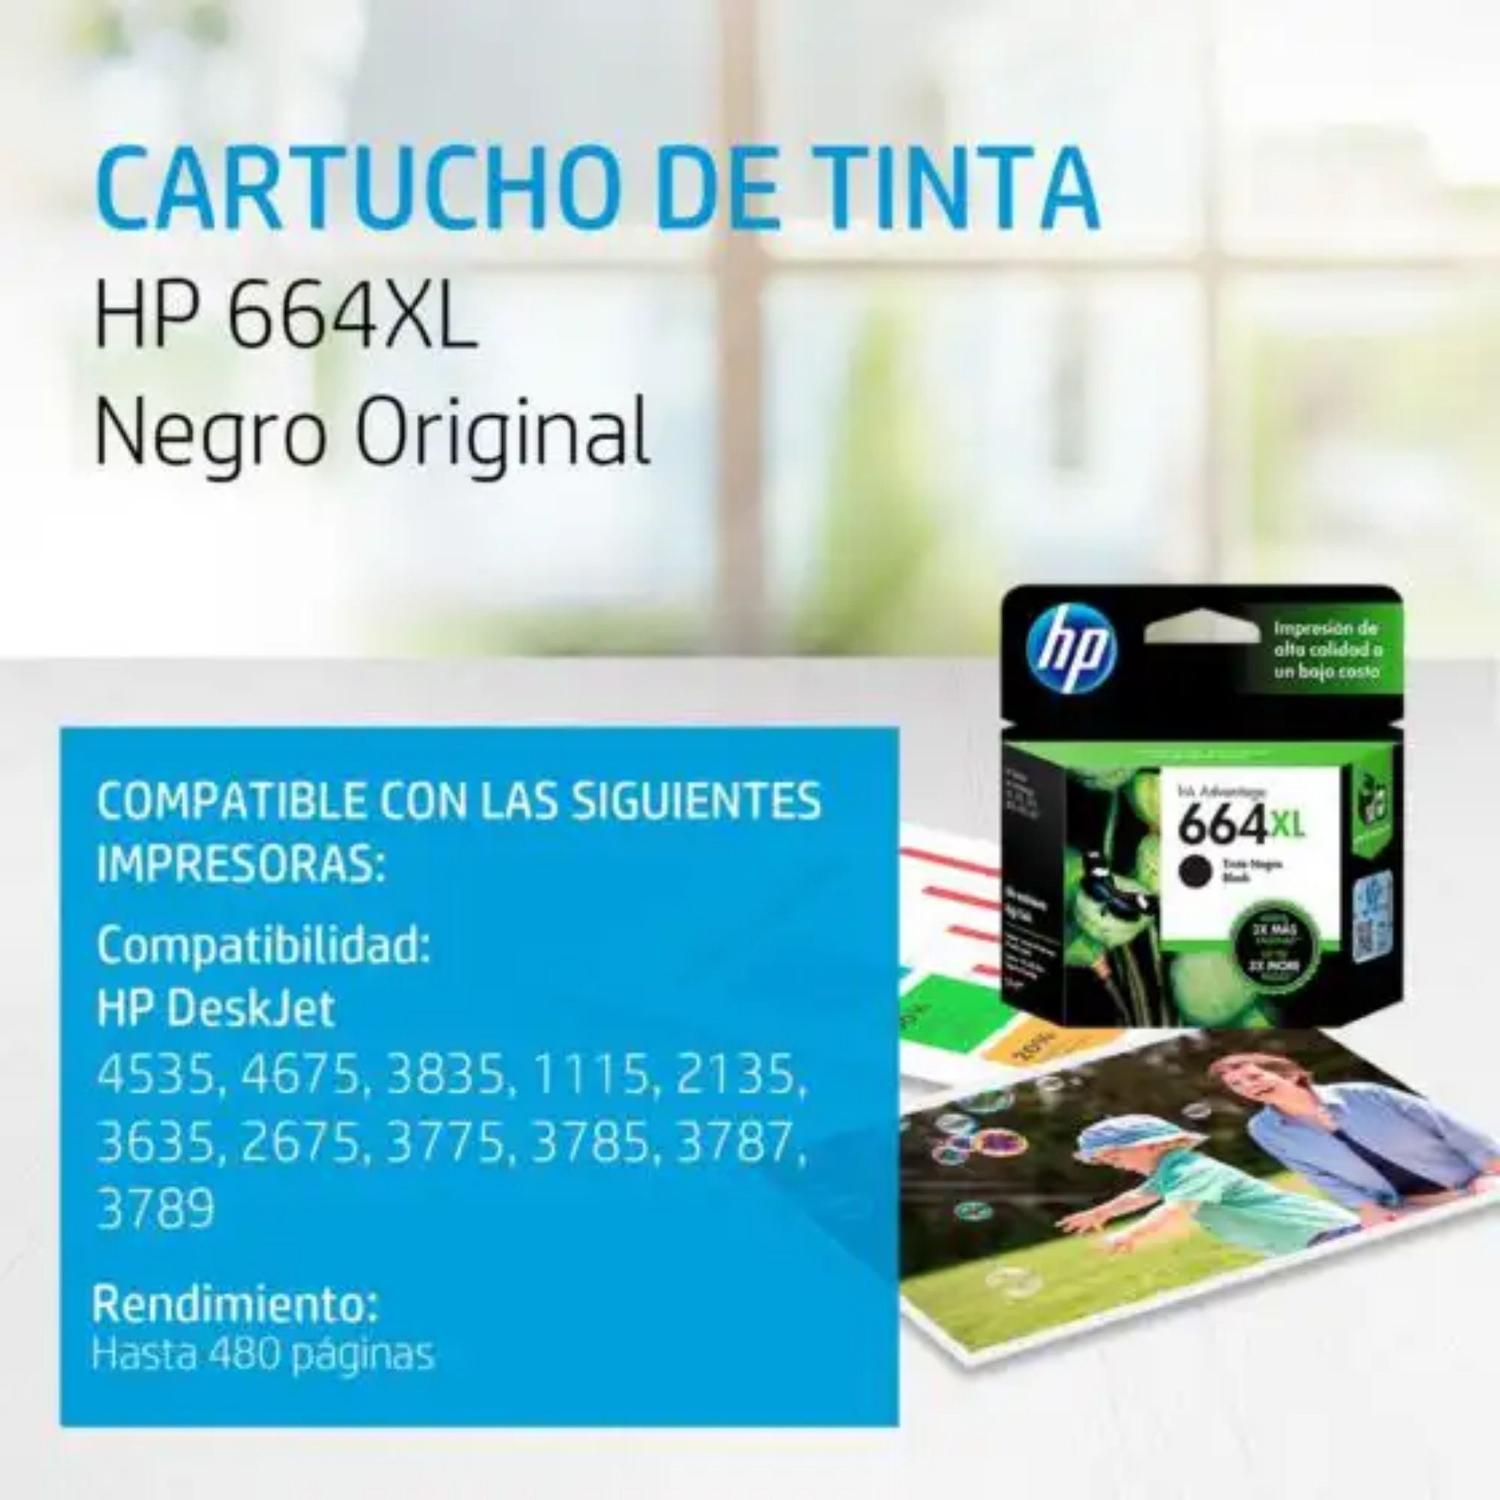 TINTA HP 664XL NEGRO ALTO RENDIMIENTO INK ADV 2135,1115 (F6V31AL)